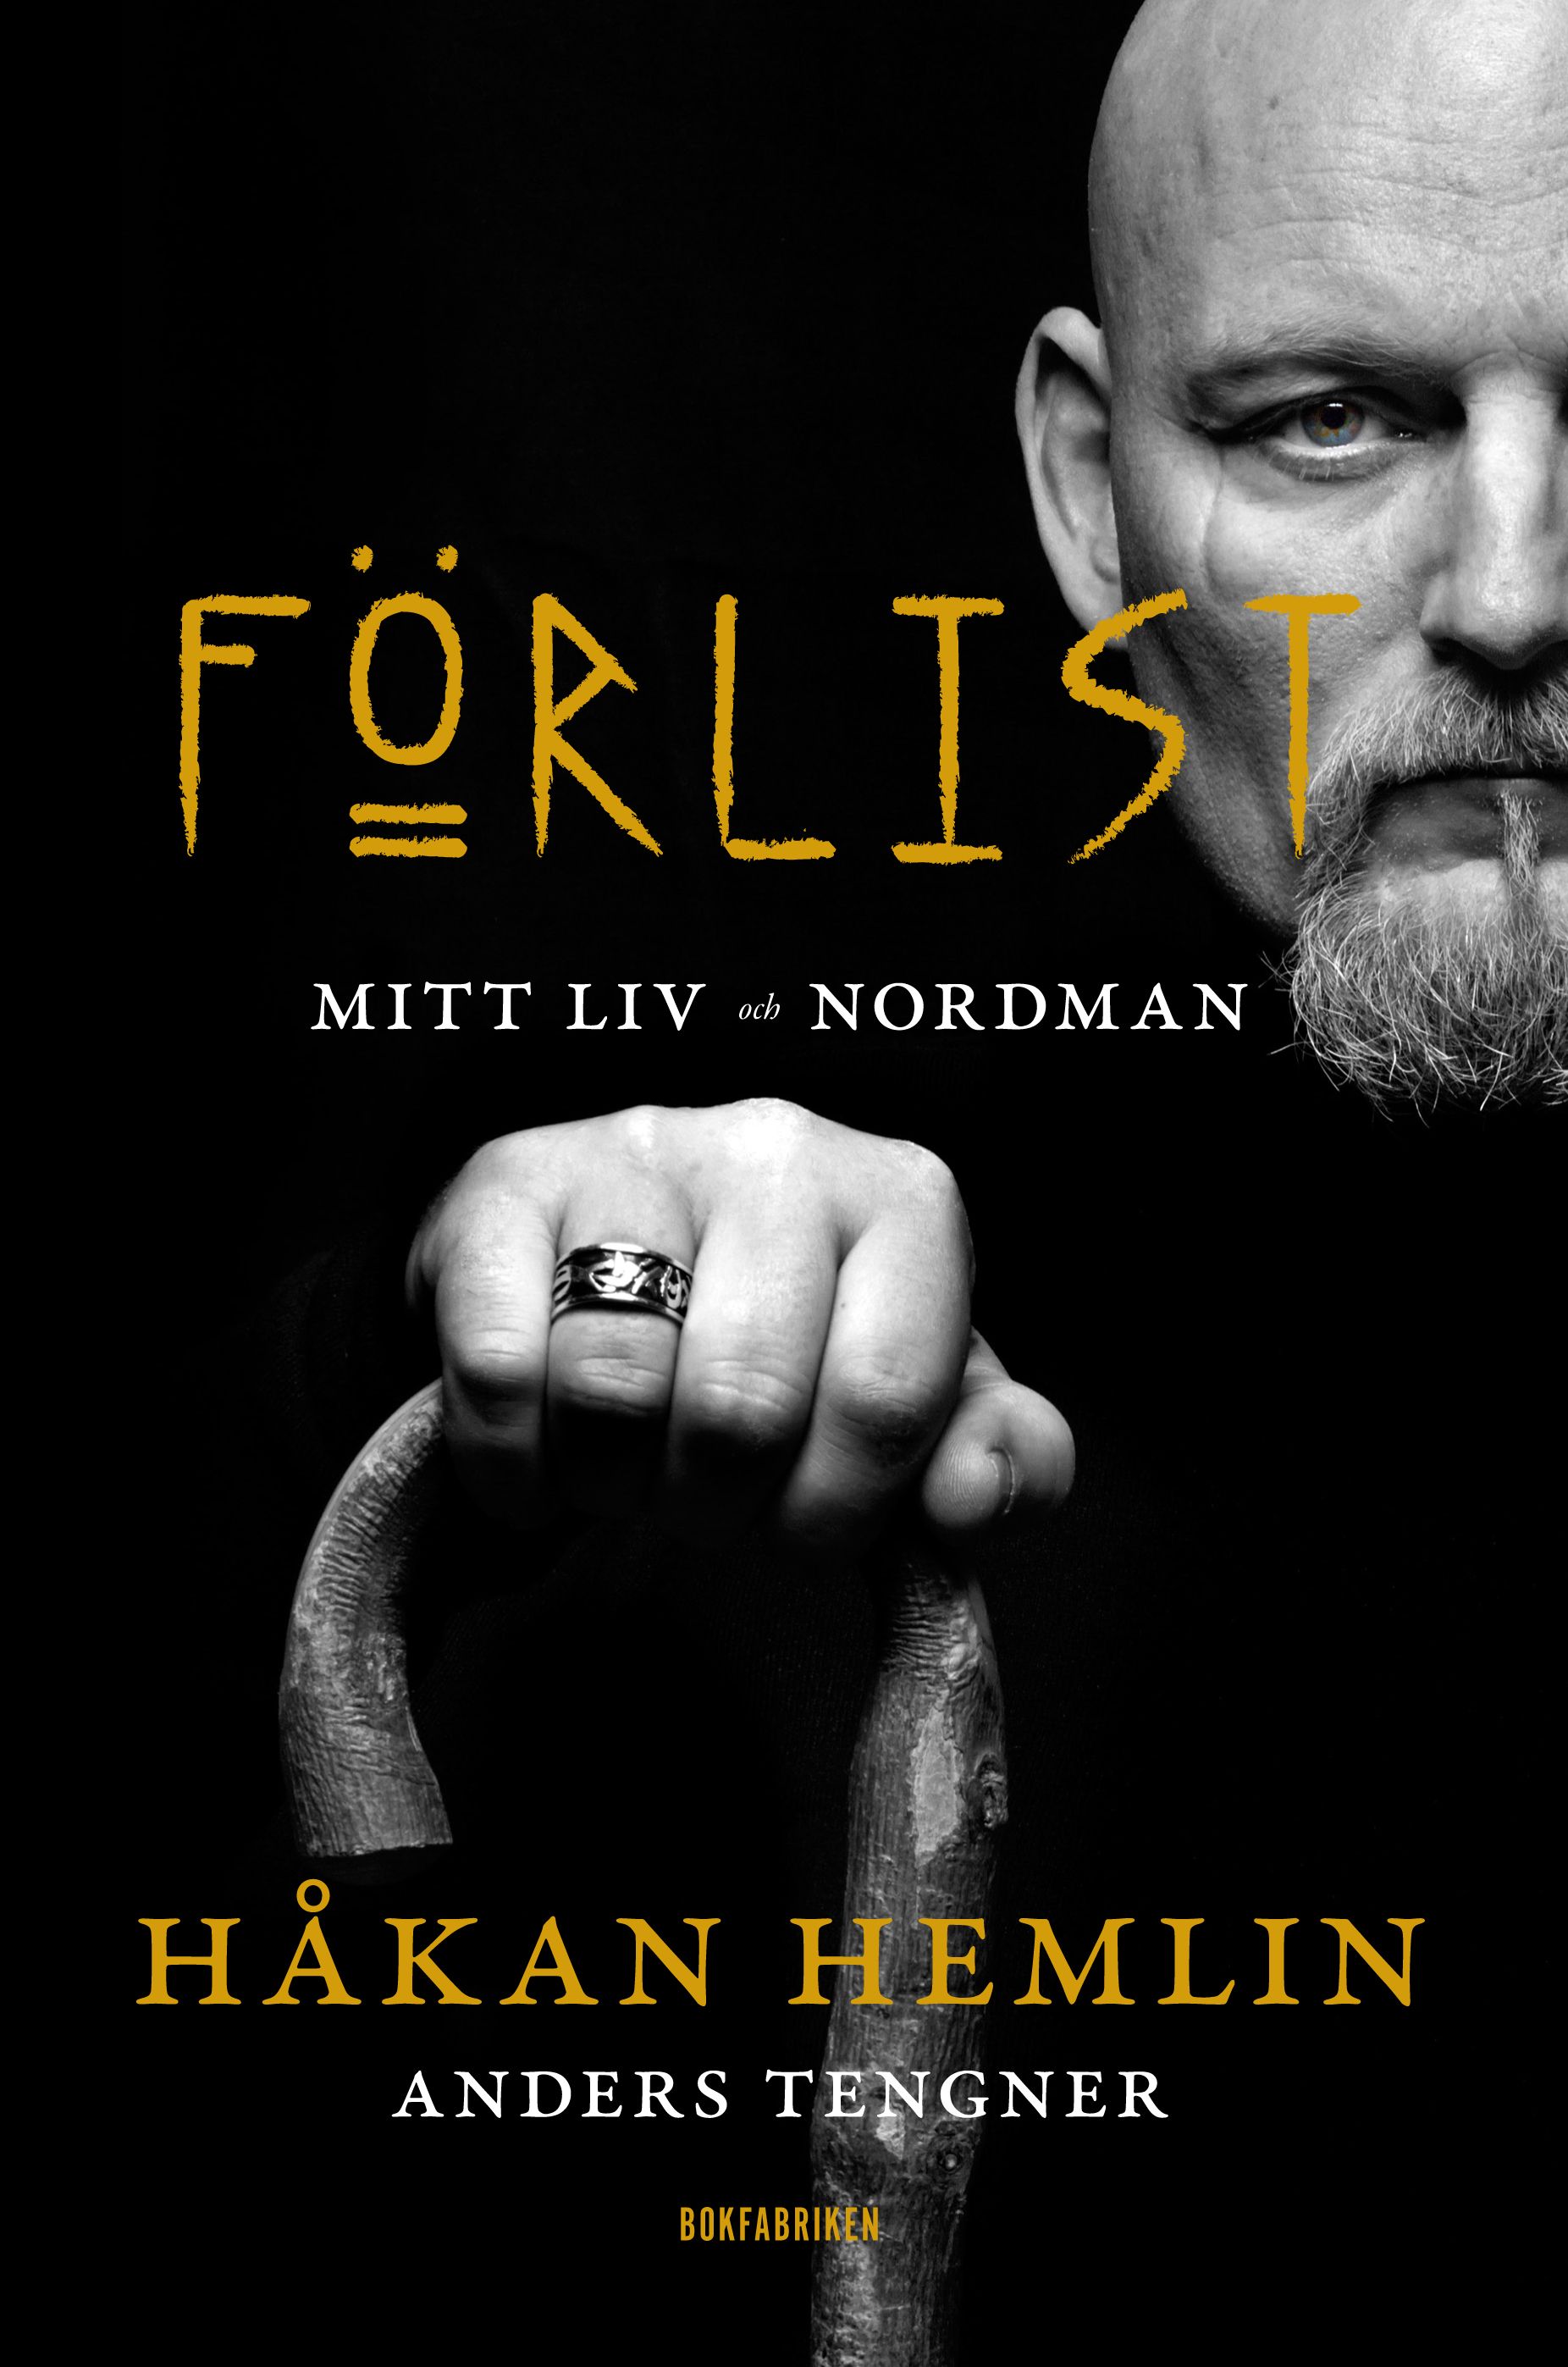 Förlist : Mitt liv och Nordman, e-bok av Håkan Hemlin, Anders Tengner